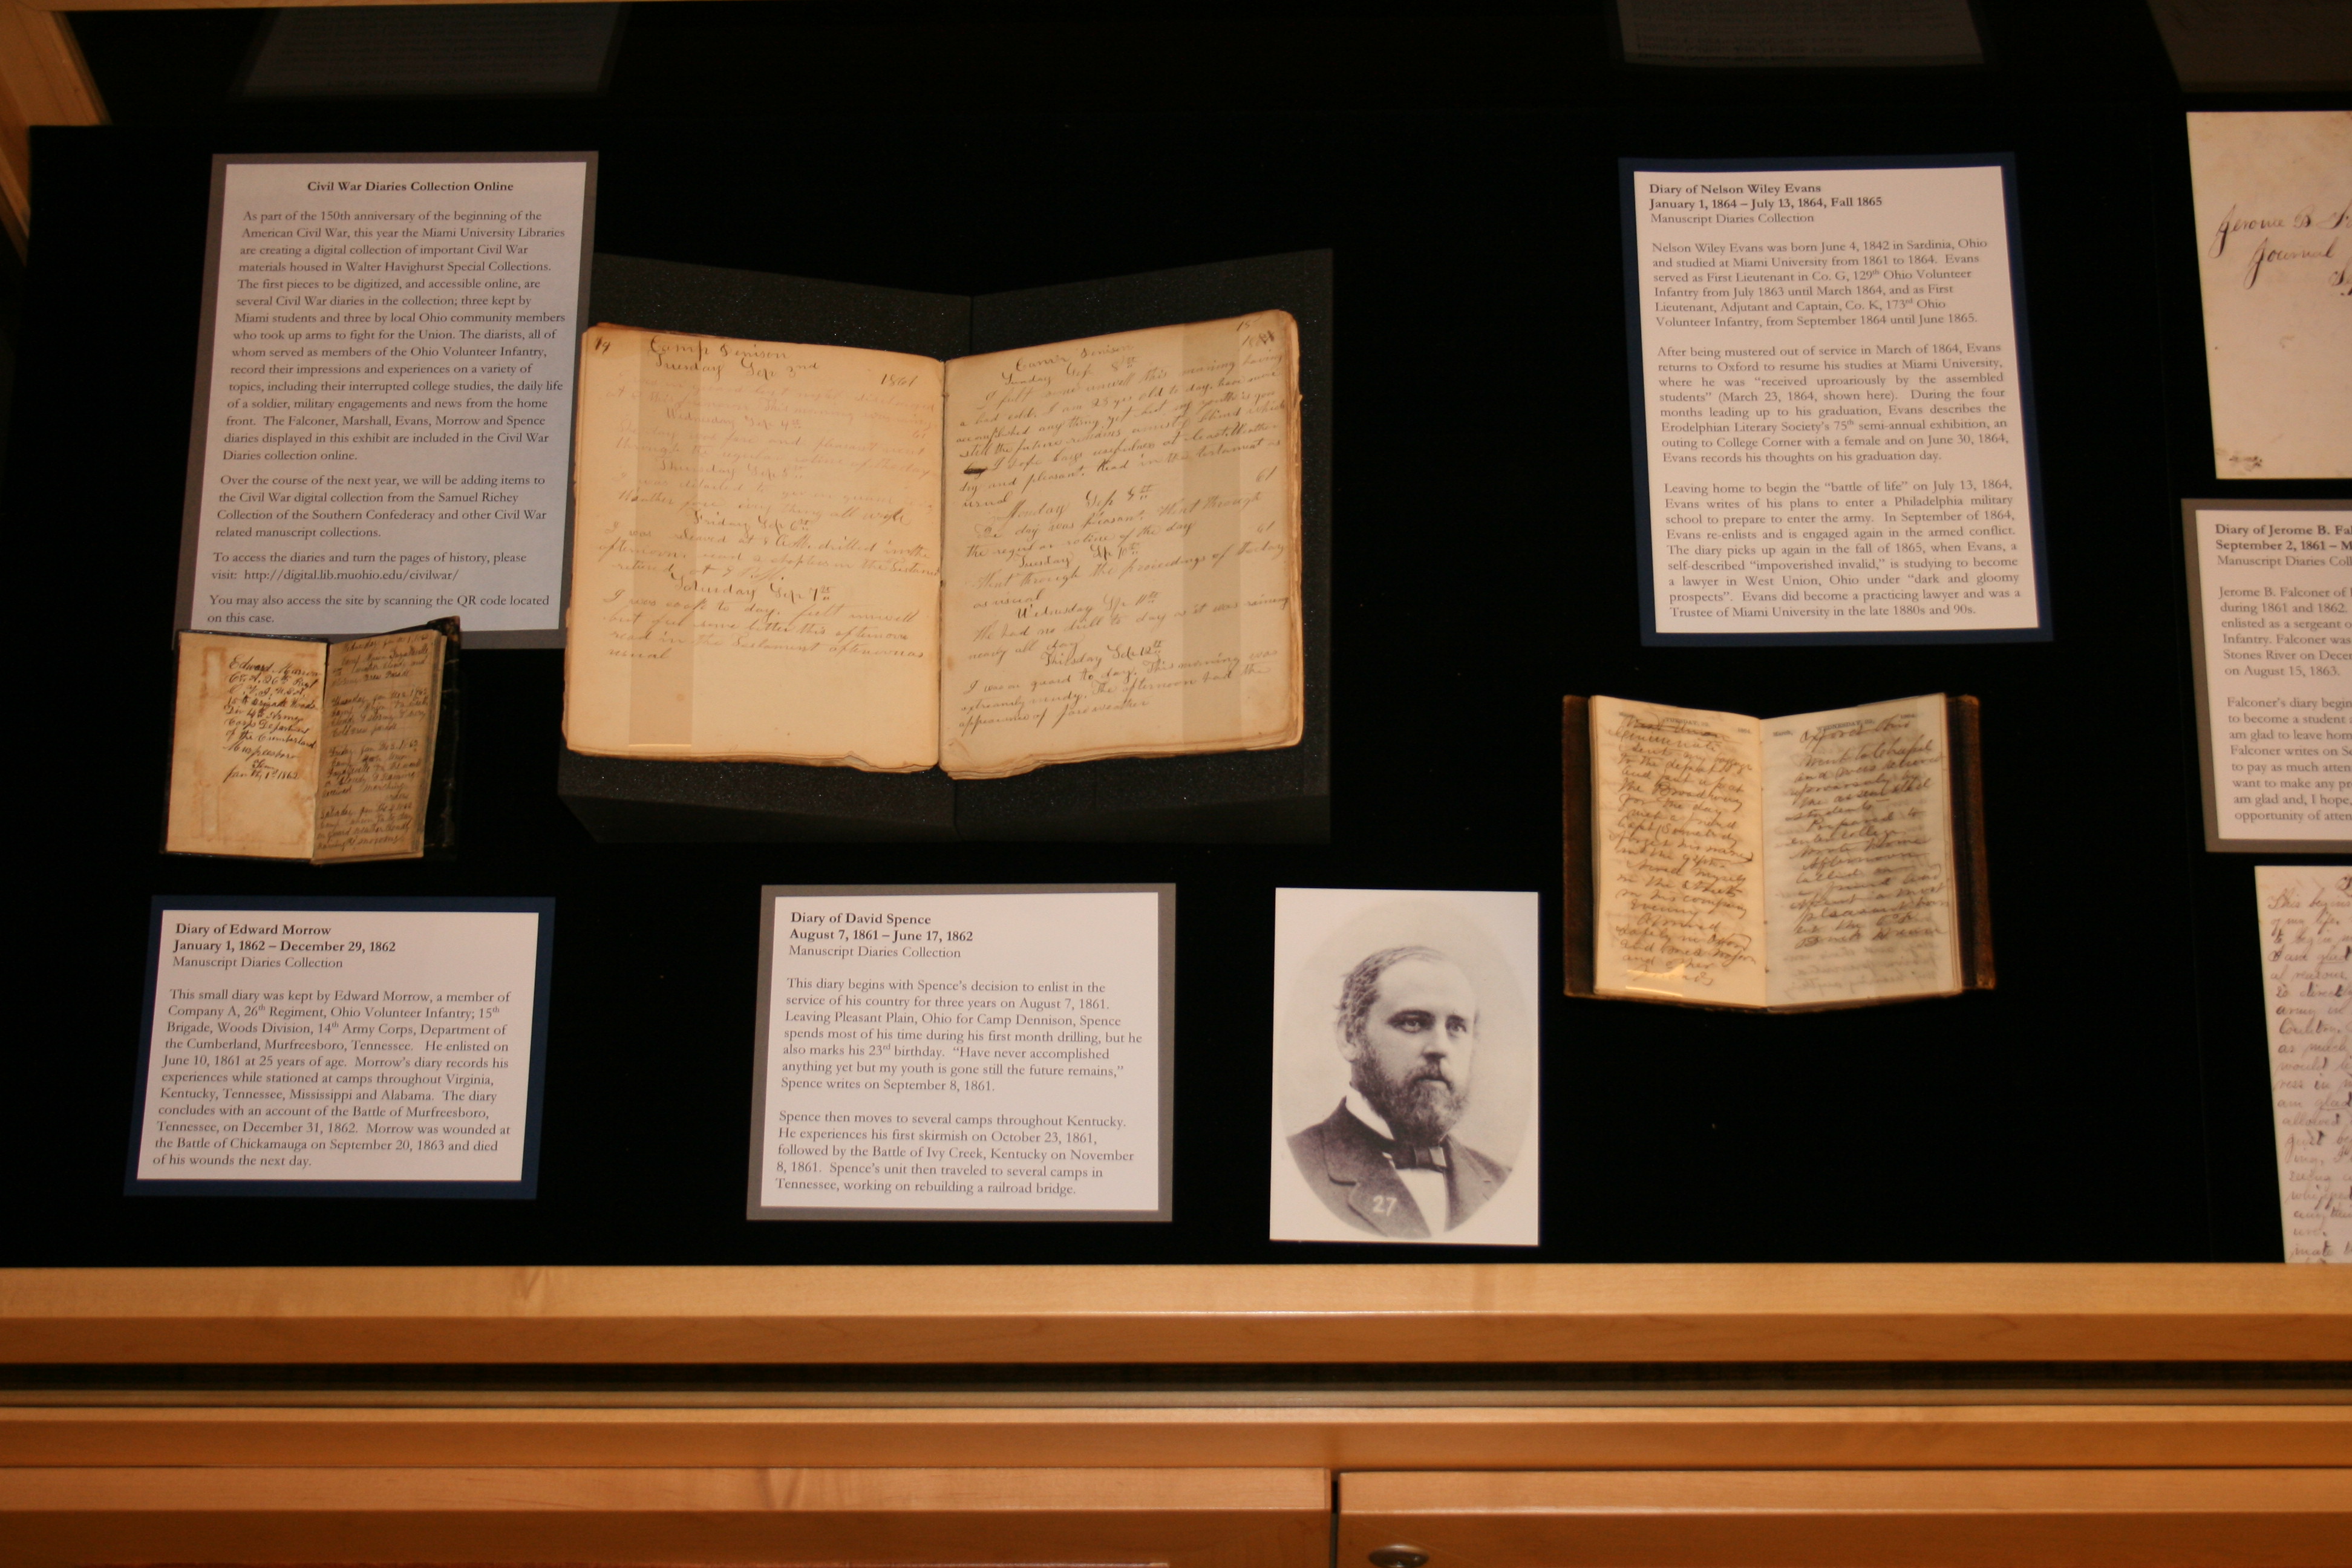 exhibit case featuring Civil War diaries